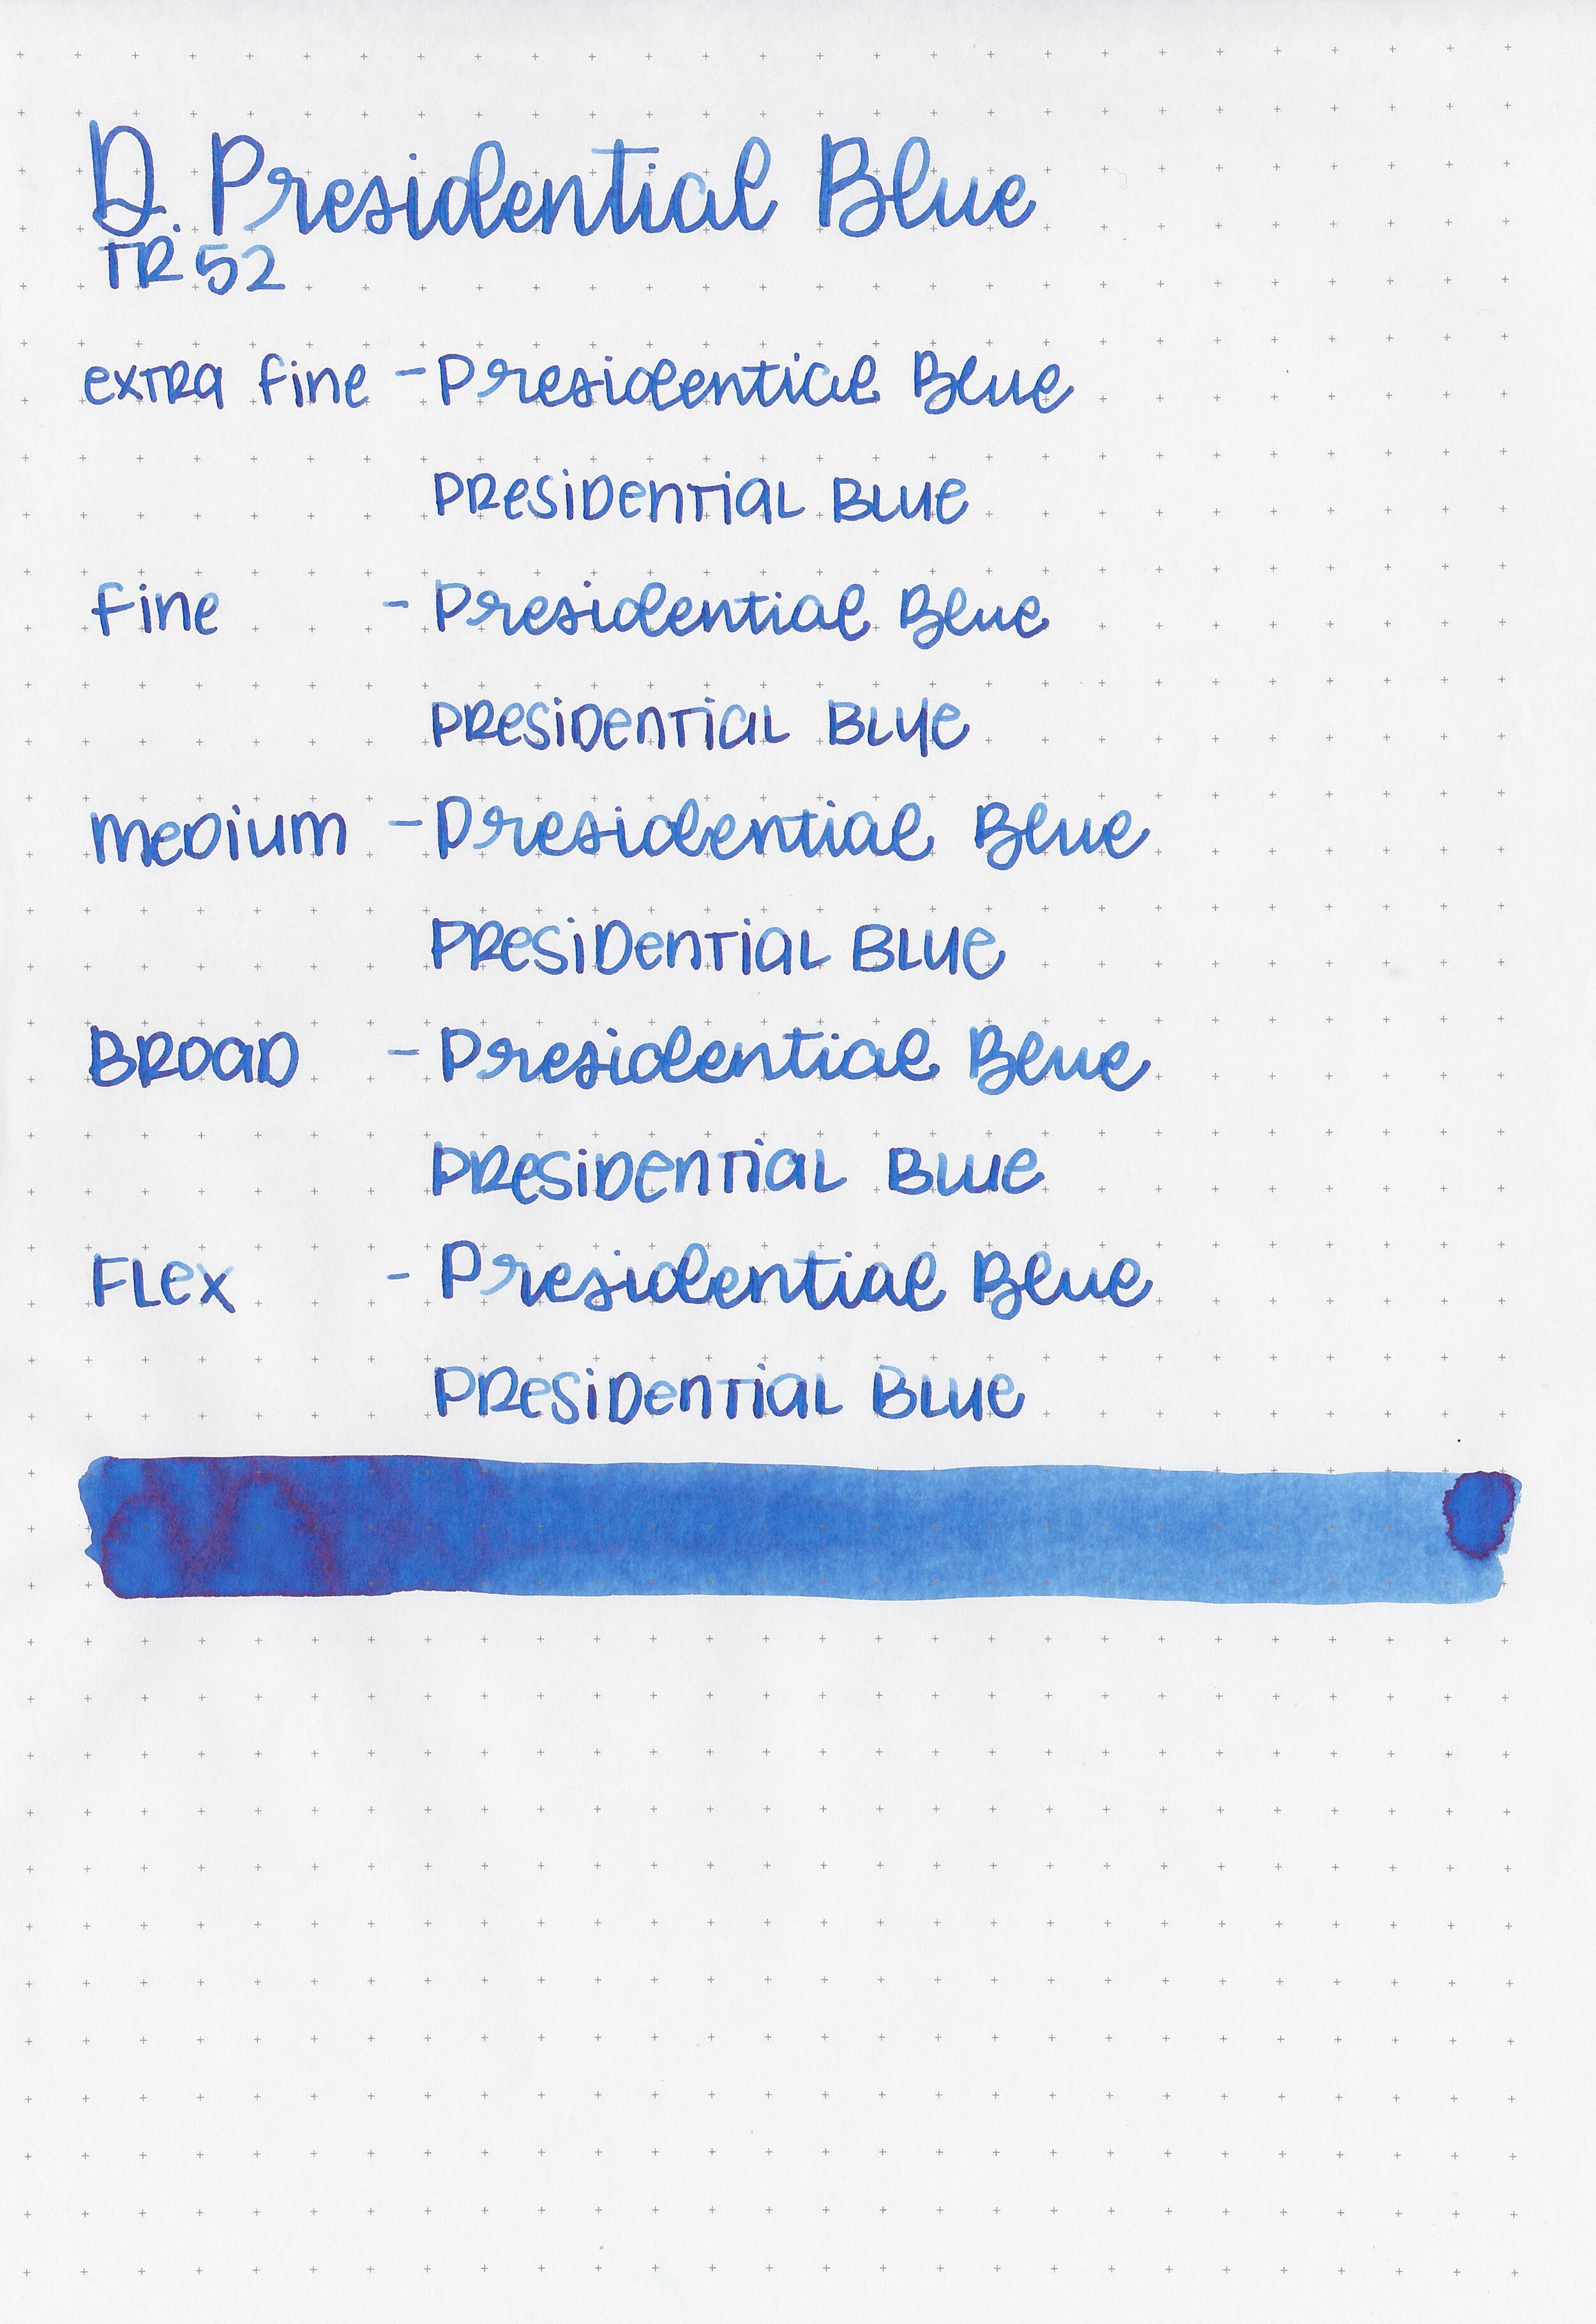 d-presidential-blue-7.jpg